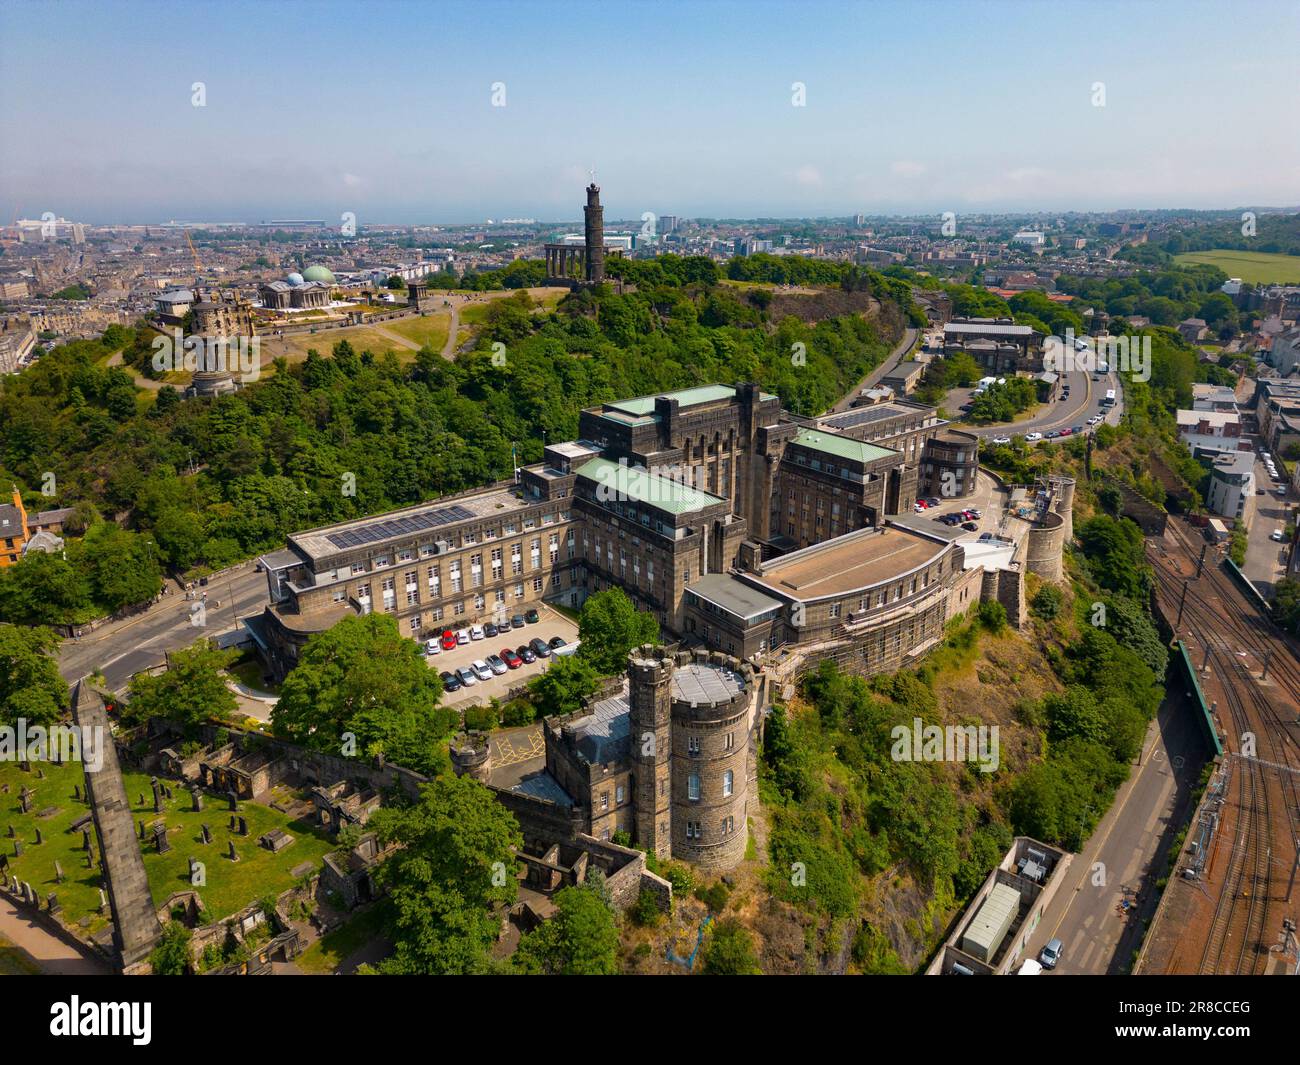 Vue aérienne du bâtiment du gouvernement écossais St Andrews House à Édimbourg, Écosse, Royaume-Uni Banque D'Images